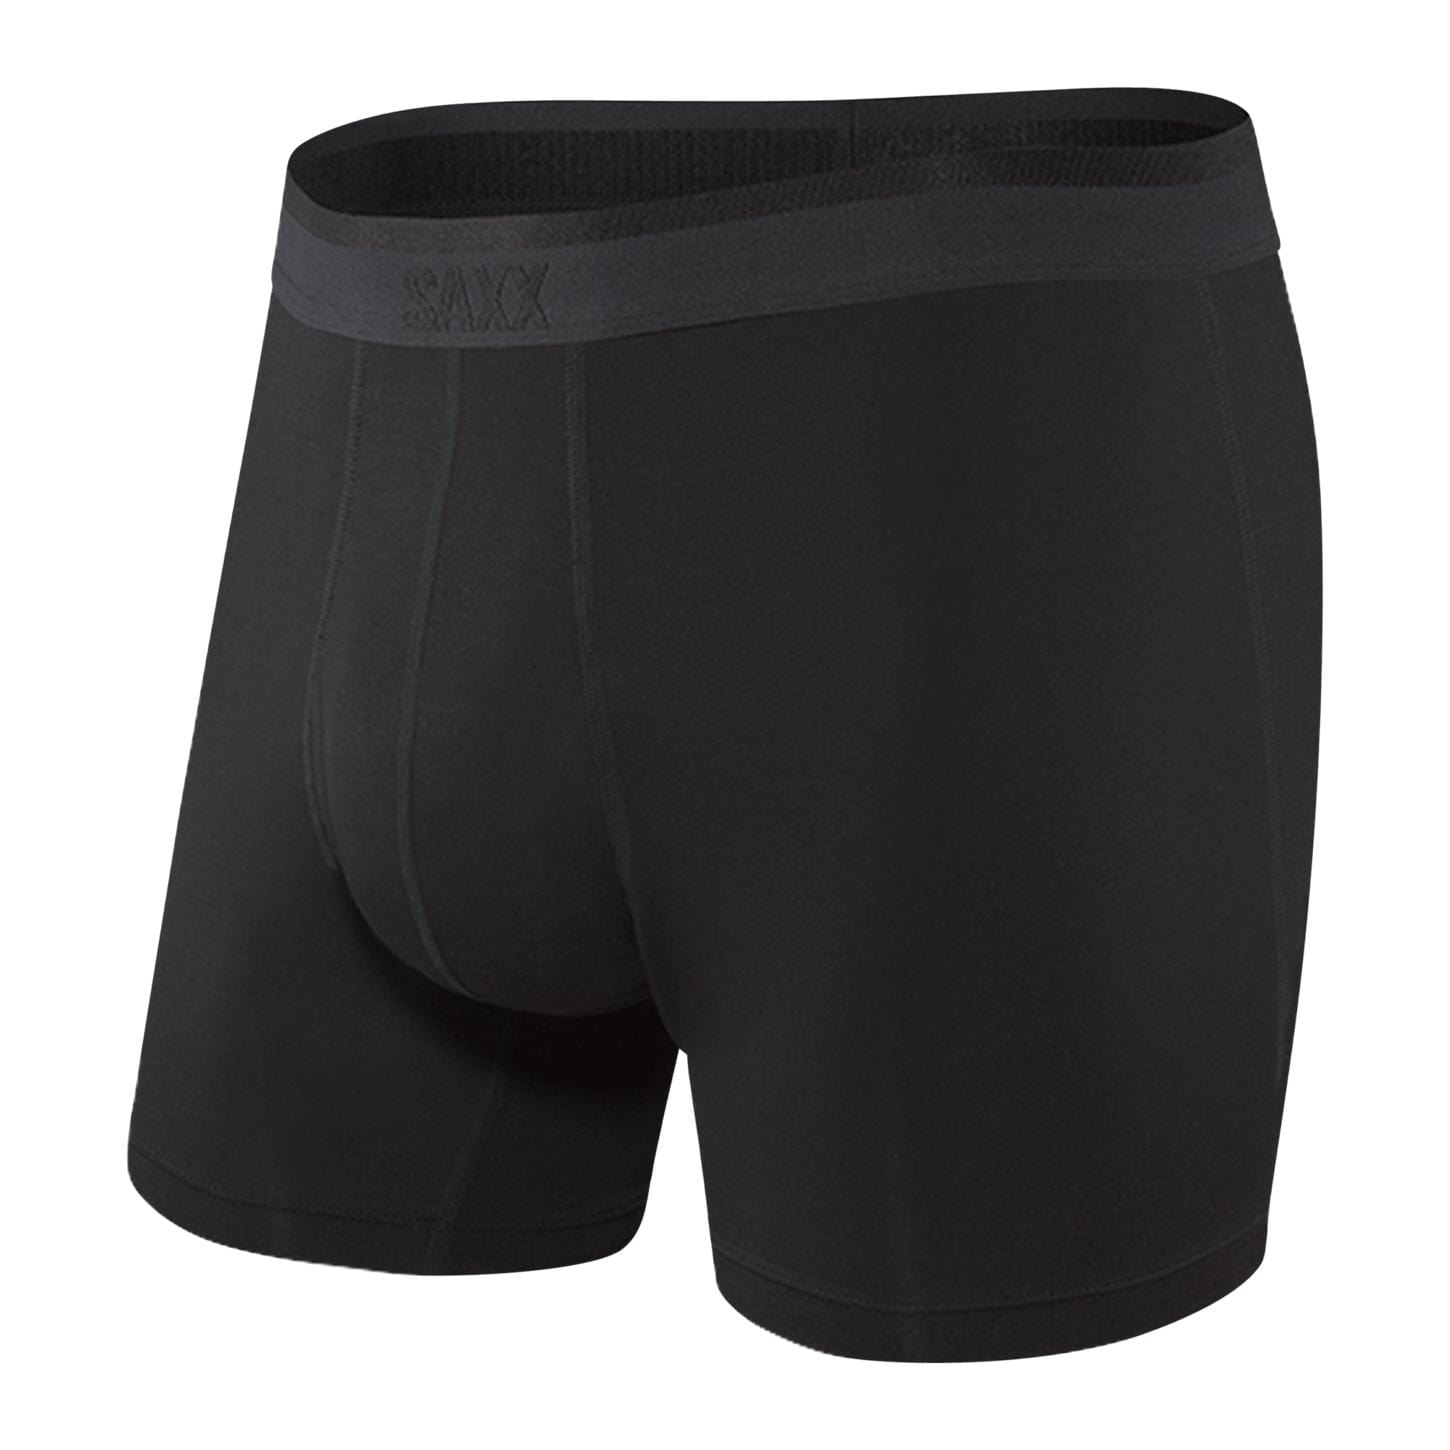 https://plantersexchange.com/cdn/shop/products/saxx-men-s-underwear-blackout-small-saxx-platinum-boxer-brief-37895112196322.jpg?v=1660305186